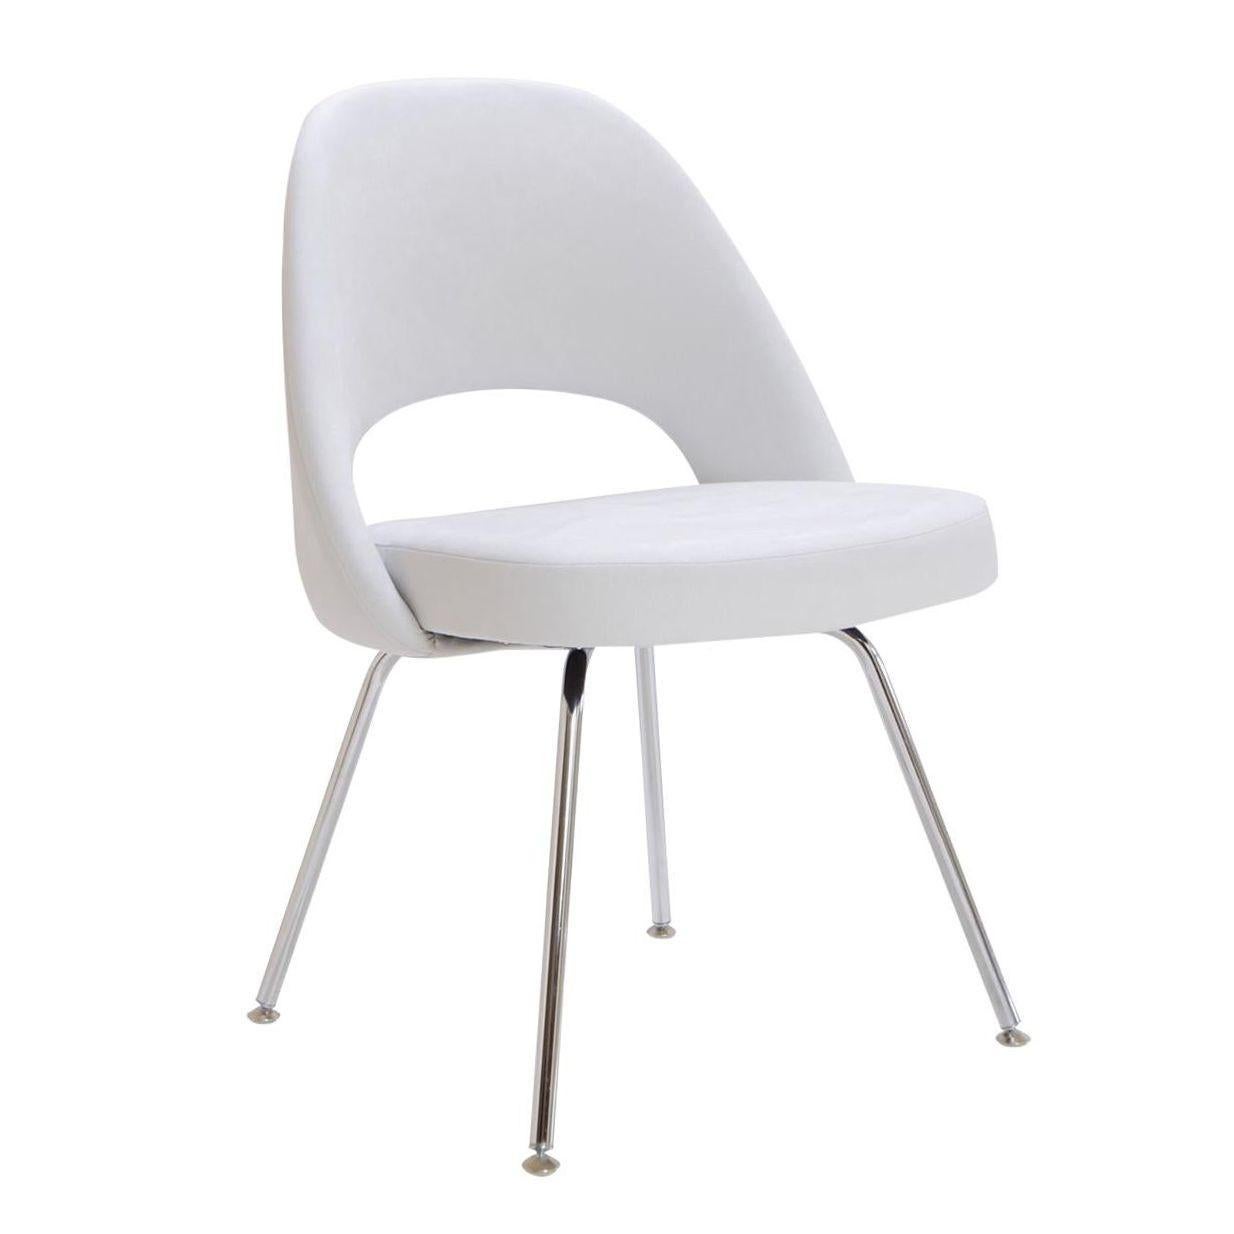 Vierer-Set Mid-Century Modern Esszimmerstühle, bestehend aus 2 Stühlen und 2 Sesseln, entworfen vom amerikanisch-finnischen Designer Eero Saarinen (1910-1961) für Knoll.
 
Die Stühle bestehen aus formgepresstem, verstärktem Polyurethan mit